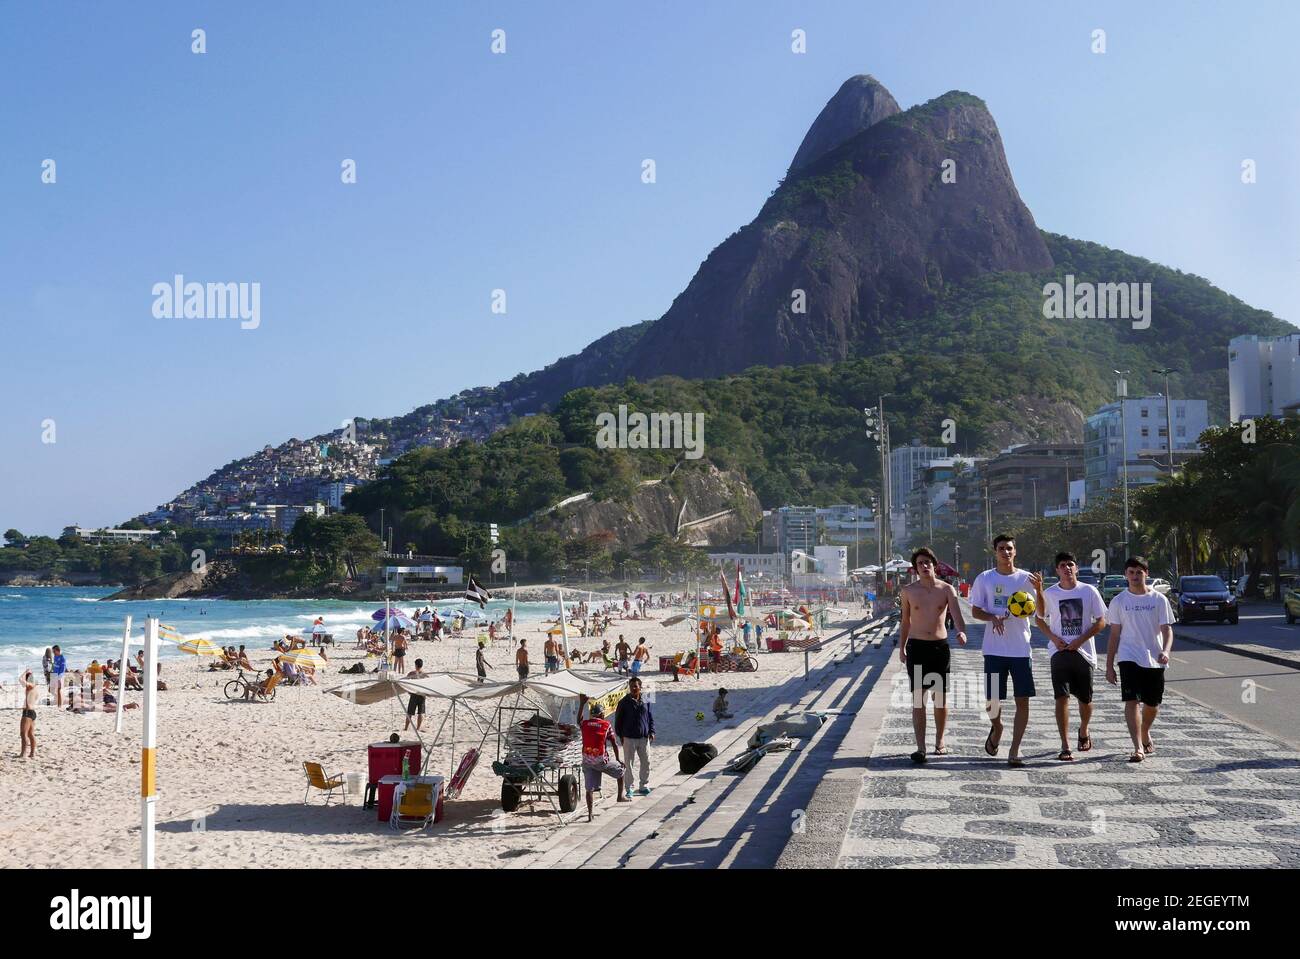 The beach at Leblon Rio de Janeiro Braxil Stock Photo